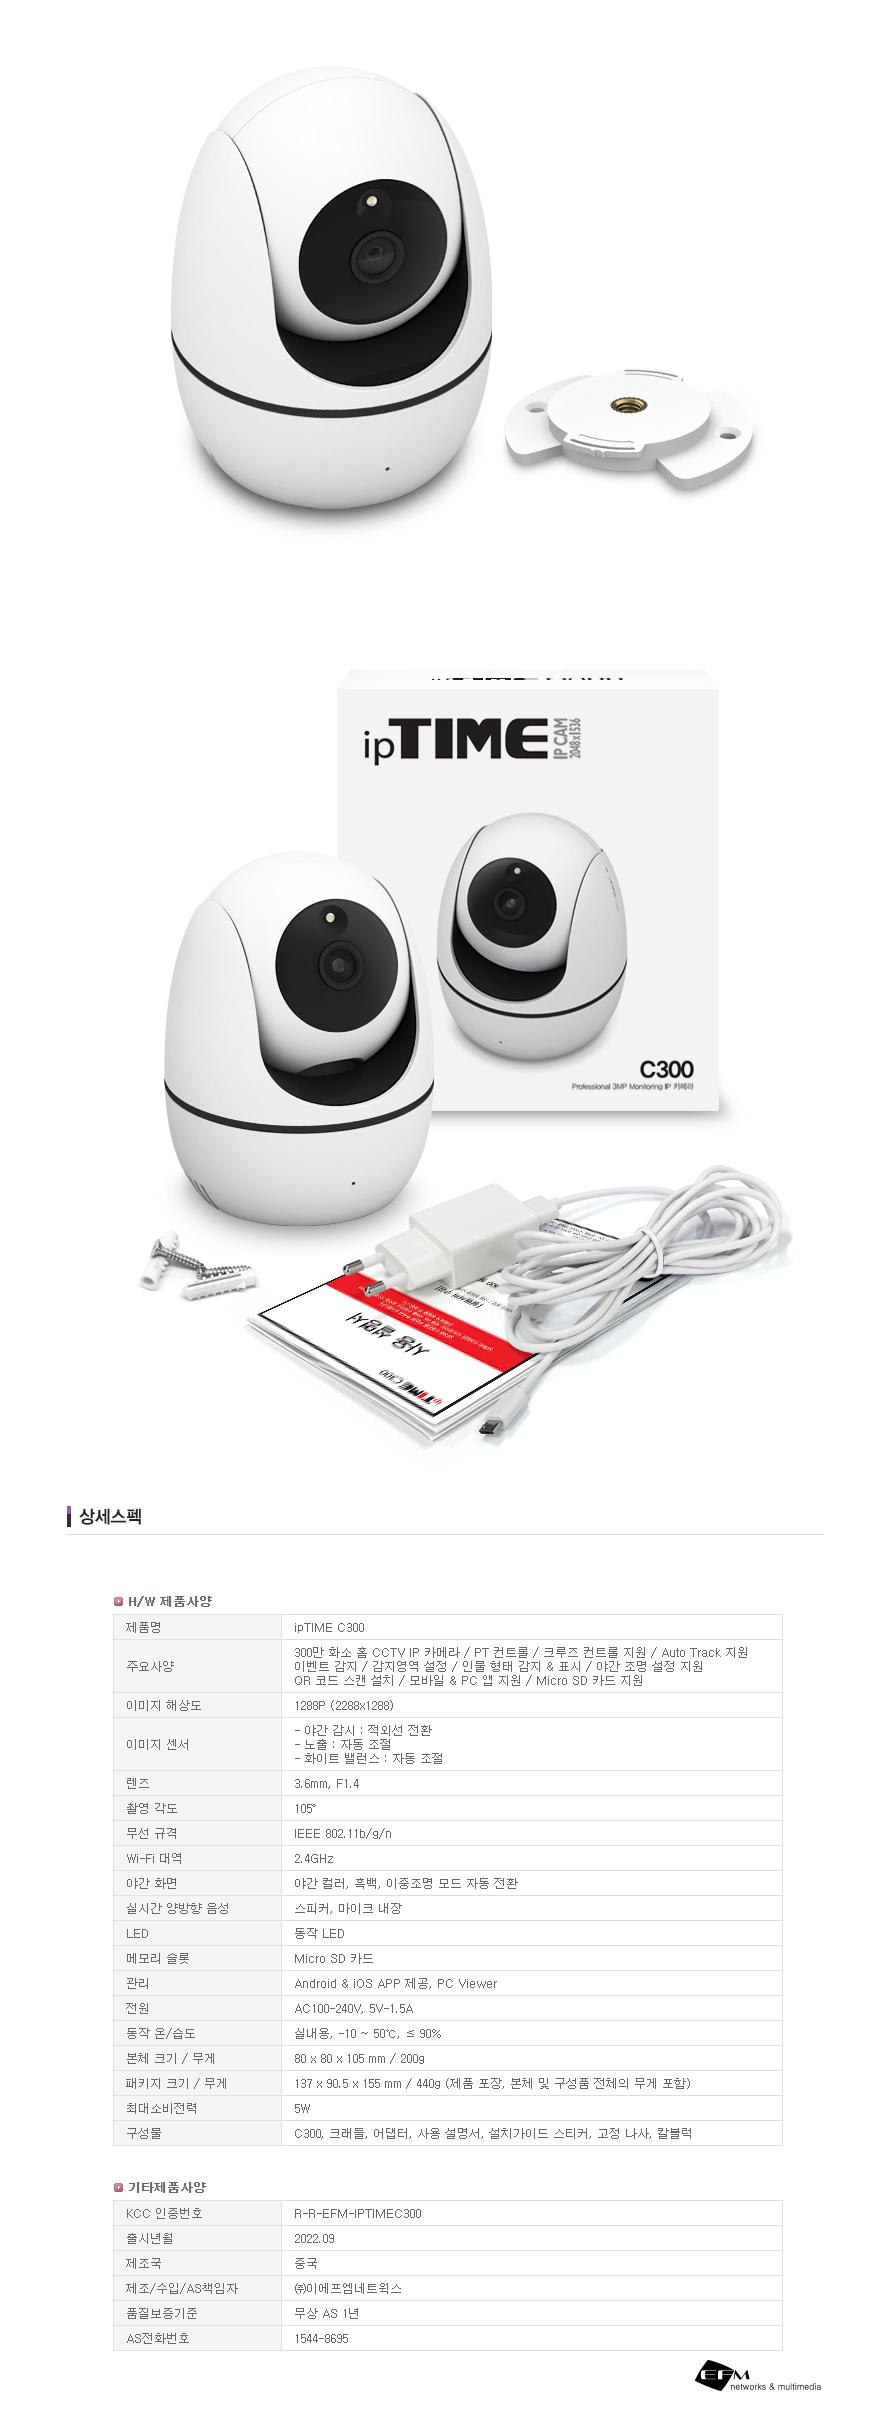 IPTIME C300 IPī޶ IPī޶ IPī޶ CCTV ī޶ CCTV CCTV CCTVī޶ ī޶ Ƽ ÿī޶ Ȩī޶ ī޶